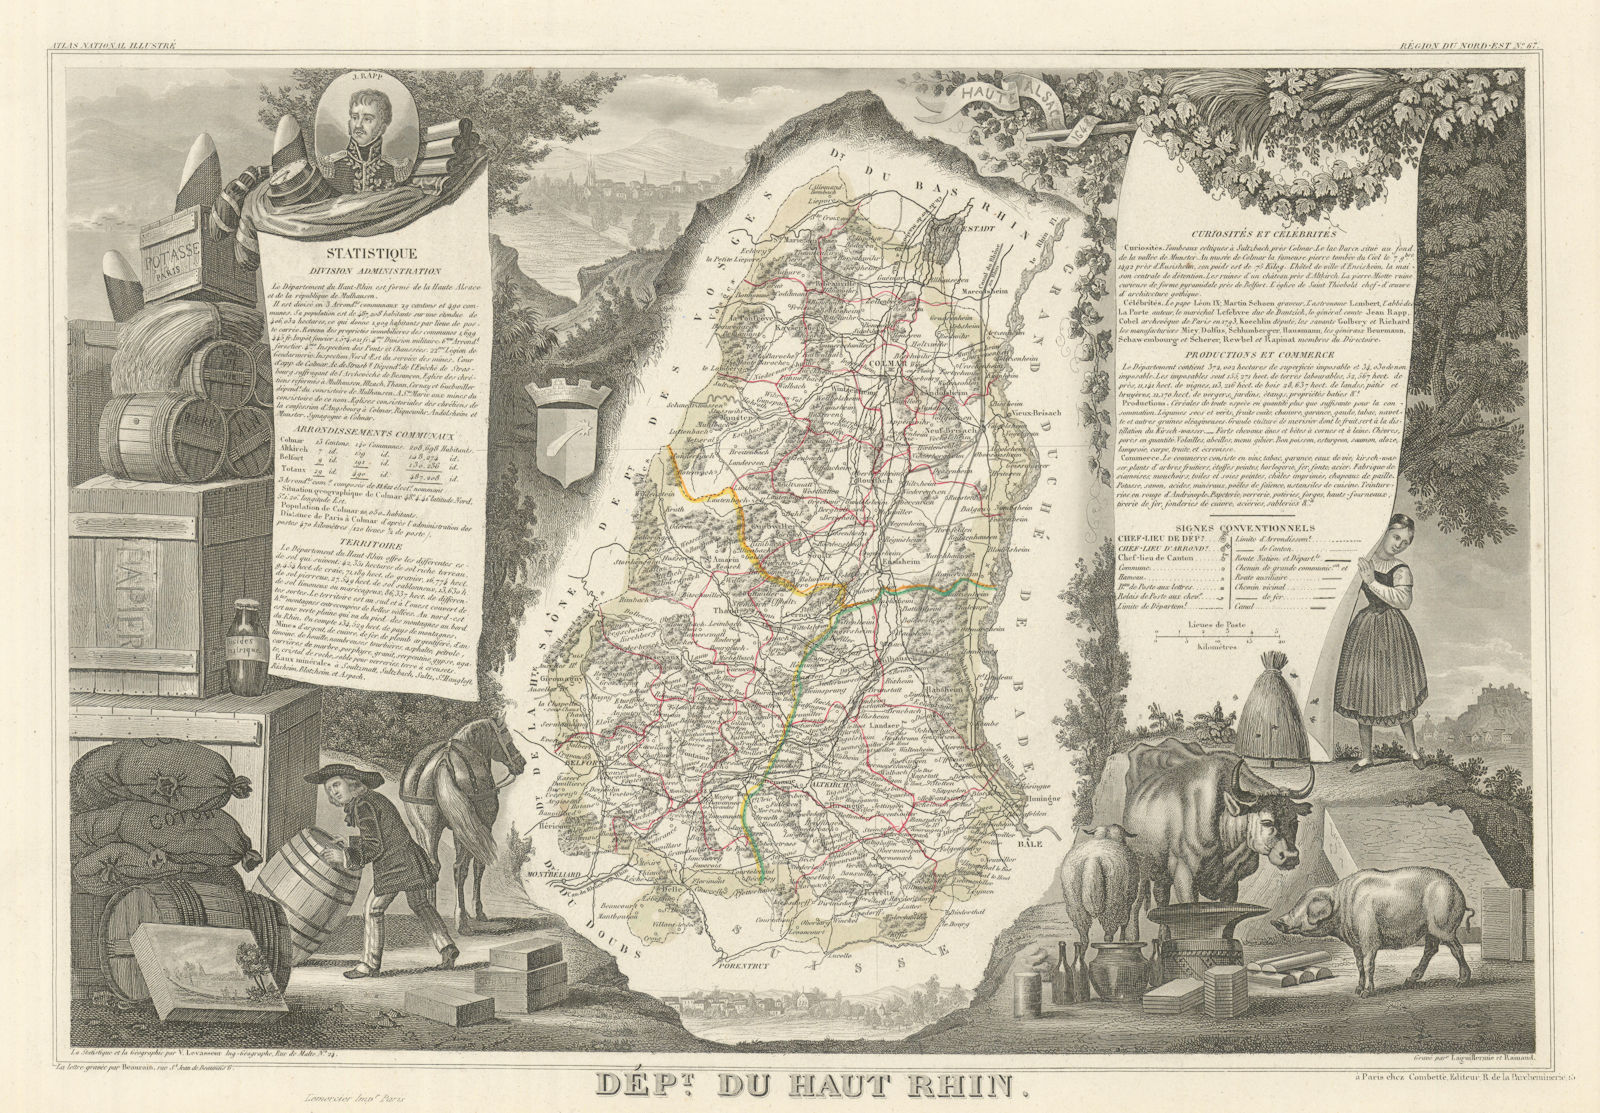 Département du HAUT-RHIN. Decorative antique map/carte by Victor LEVASSEUR 1856